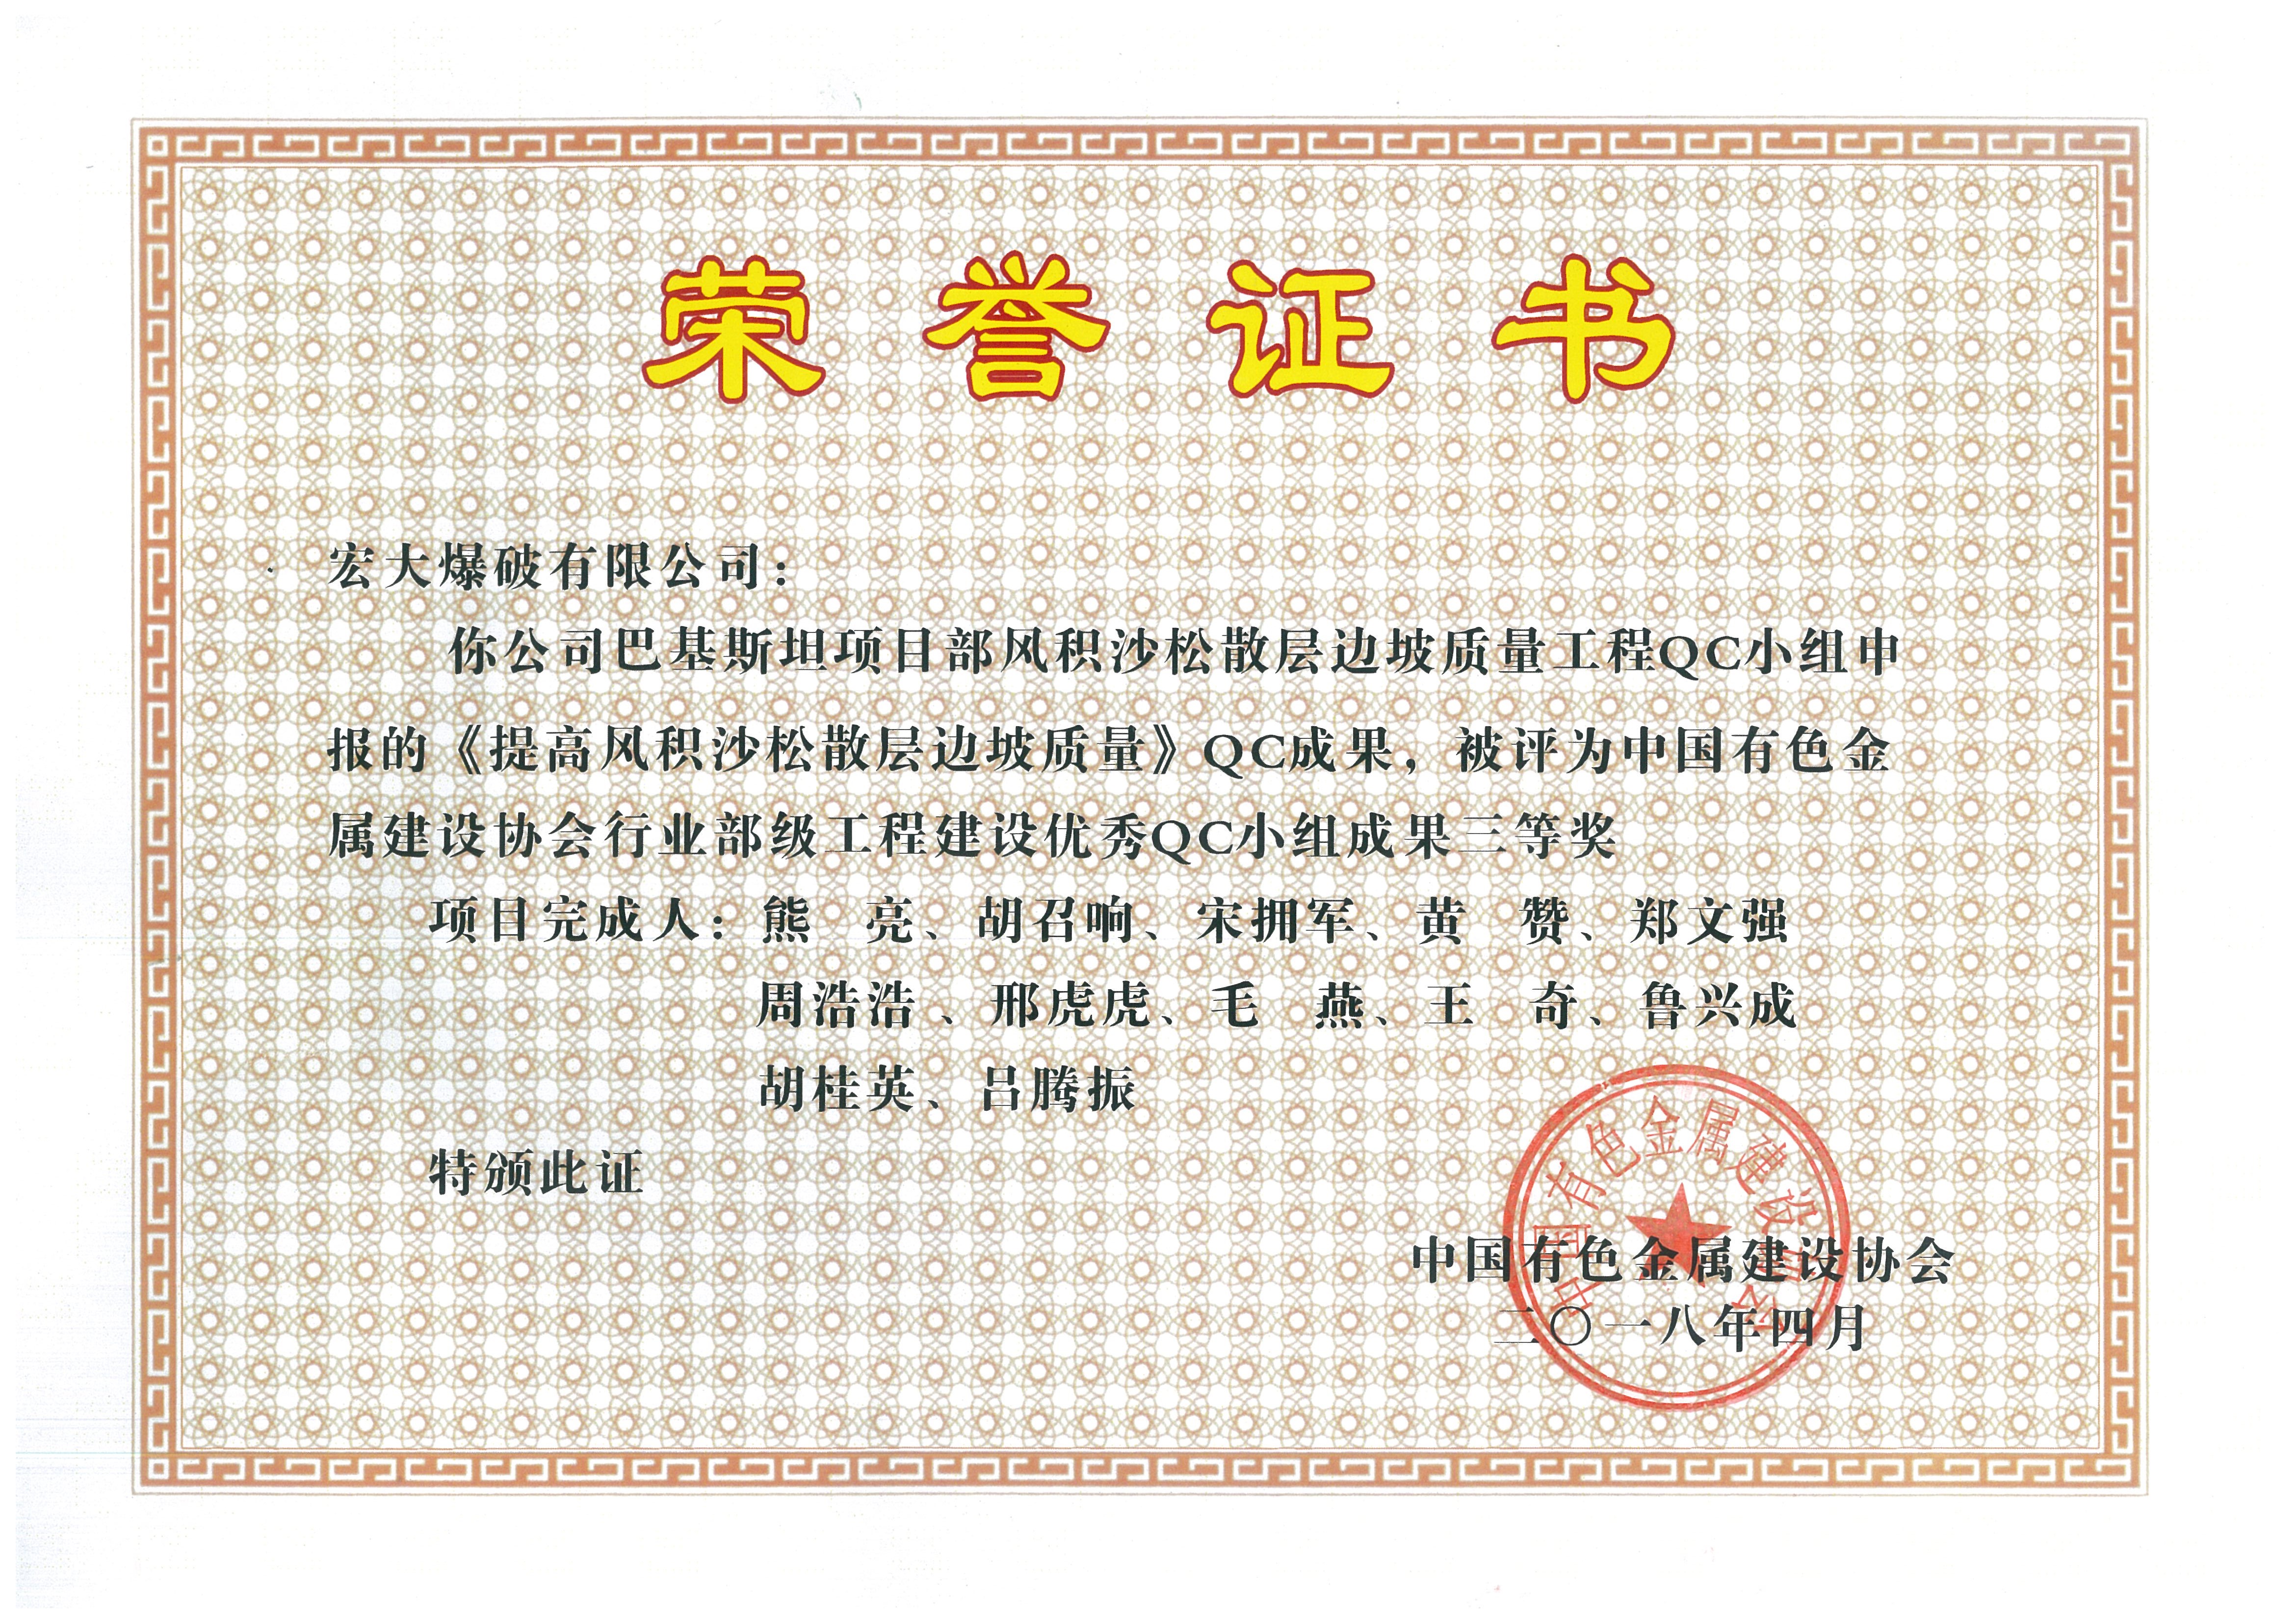 中國有色金屬建設協會行業部級工程三等獎